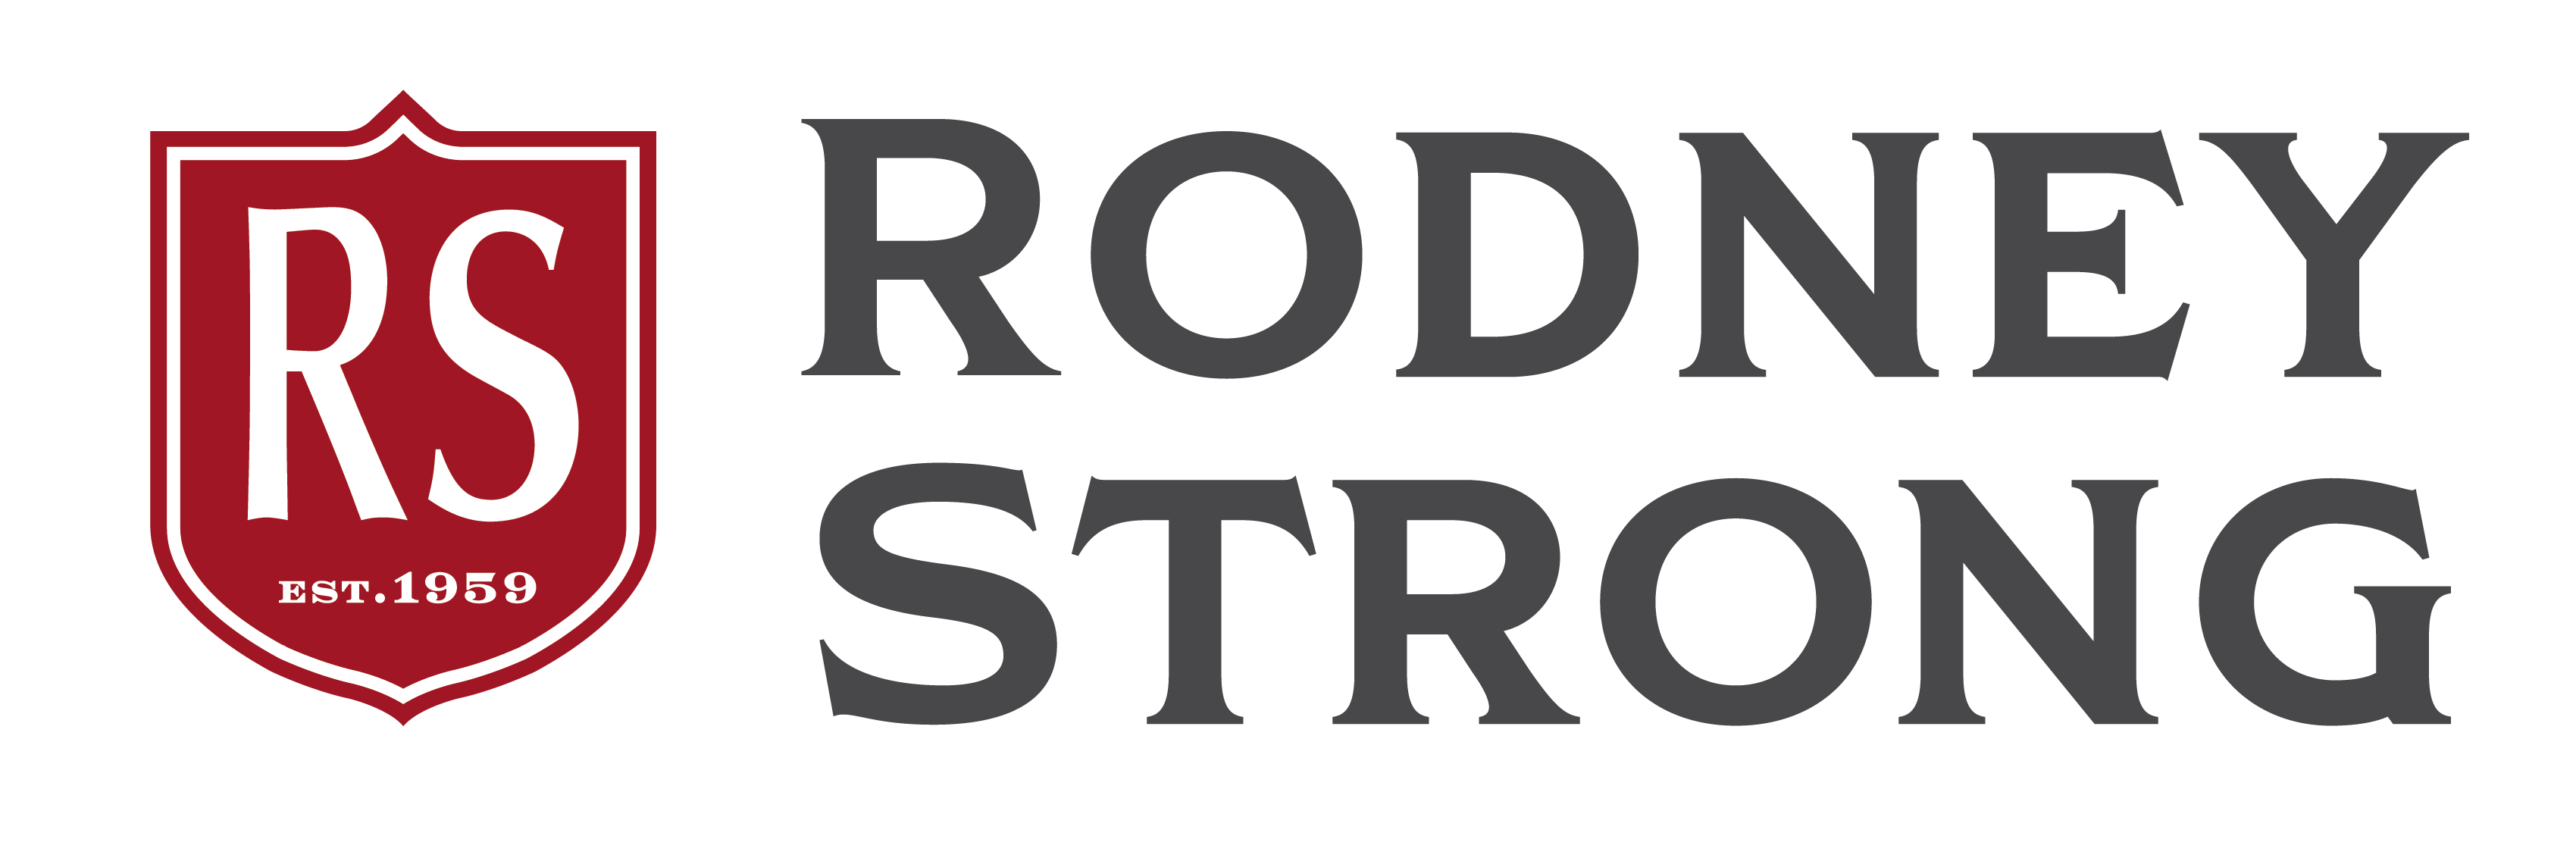 Brand Assets | Rodney Strong Vineyards